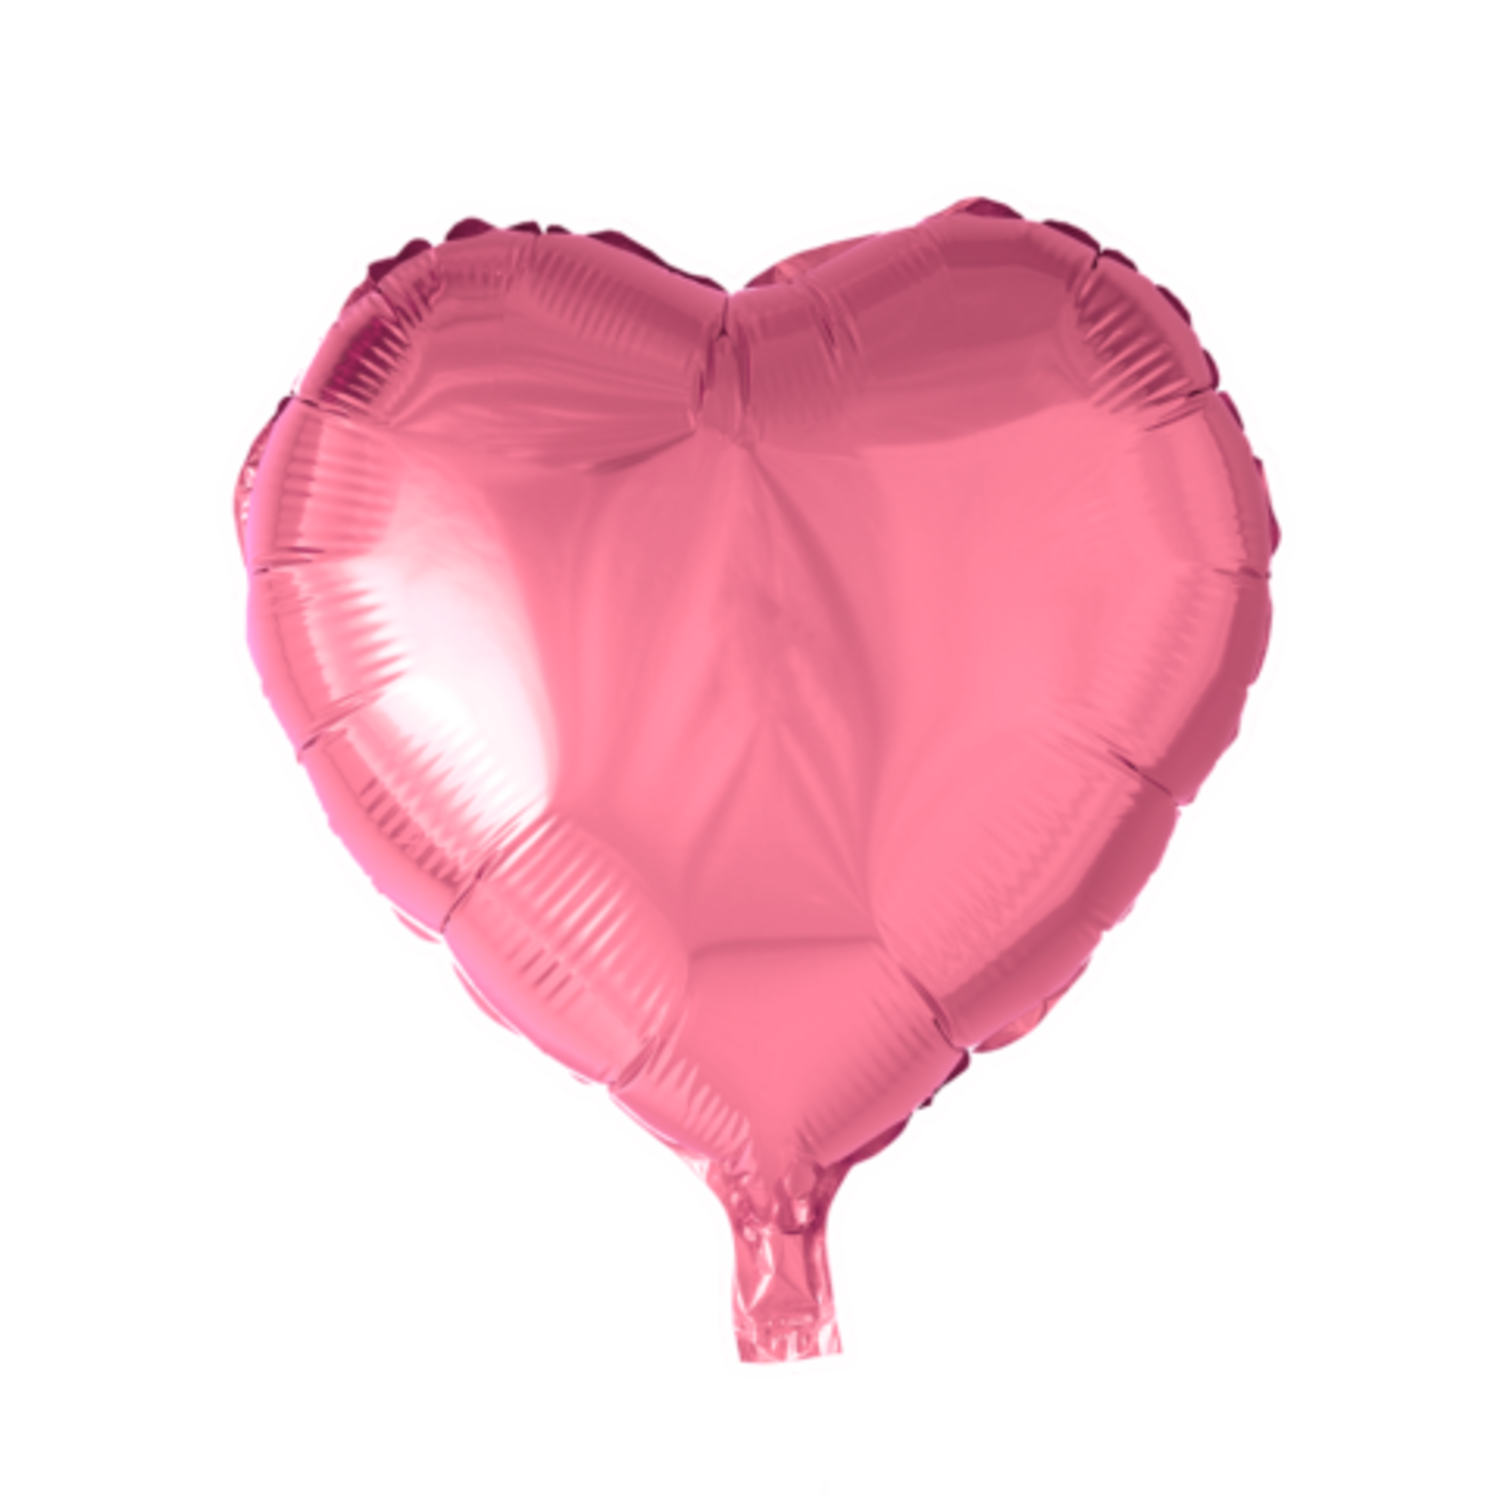 Un ballon hélium en forme de montgolfière